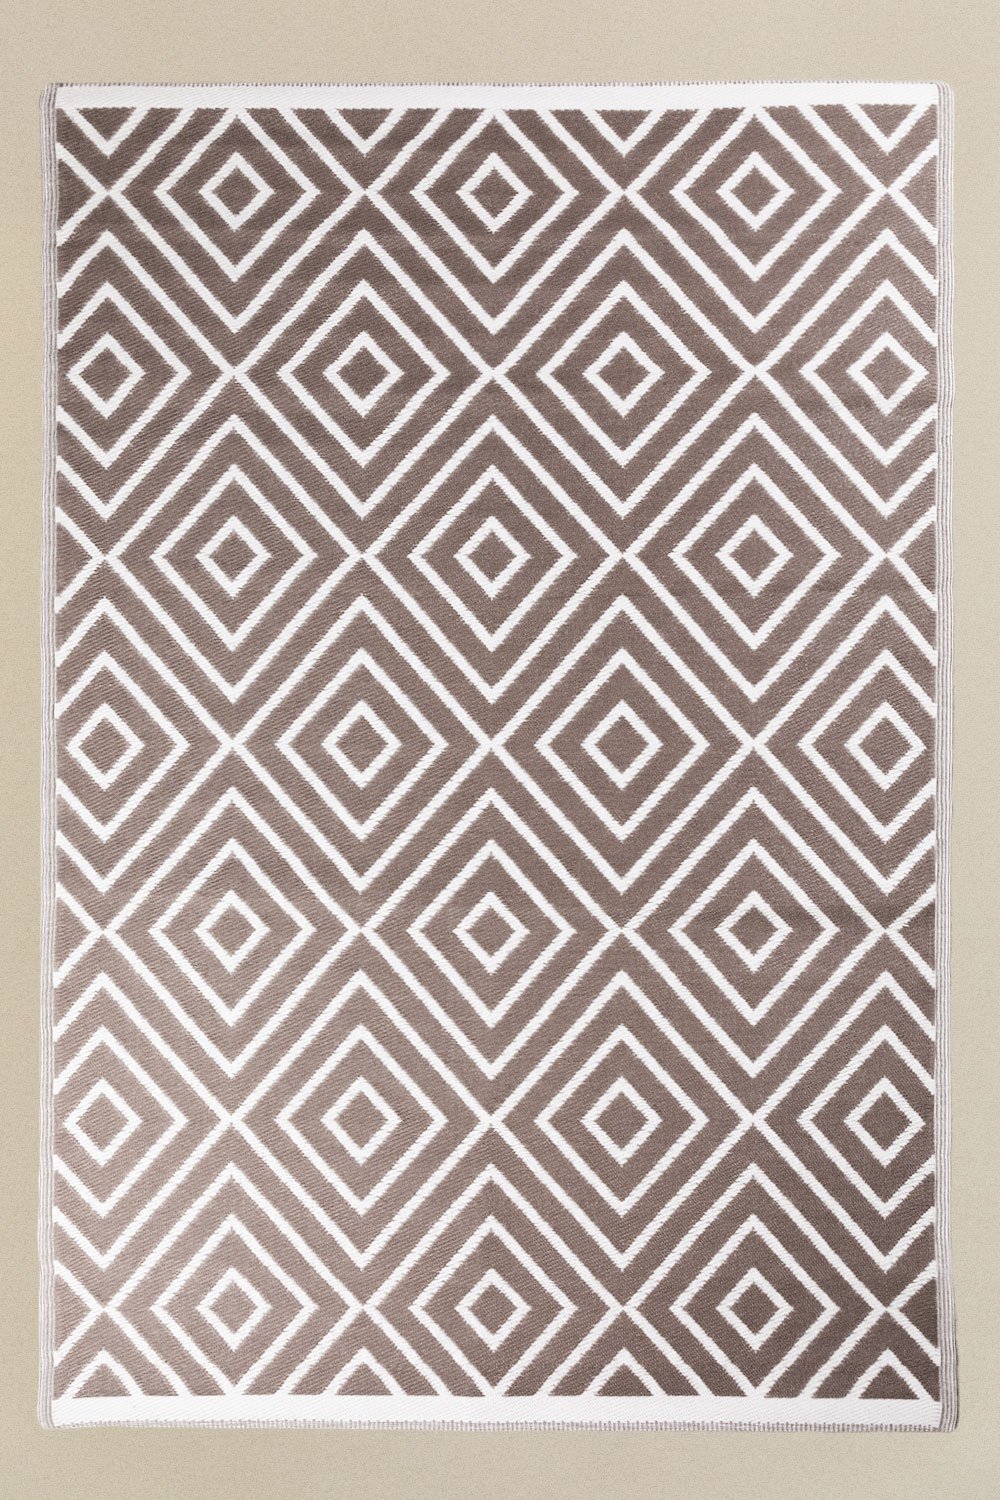 Tappeto da esterno (271x182 cm) Neya, immagine della galleria 2